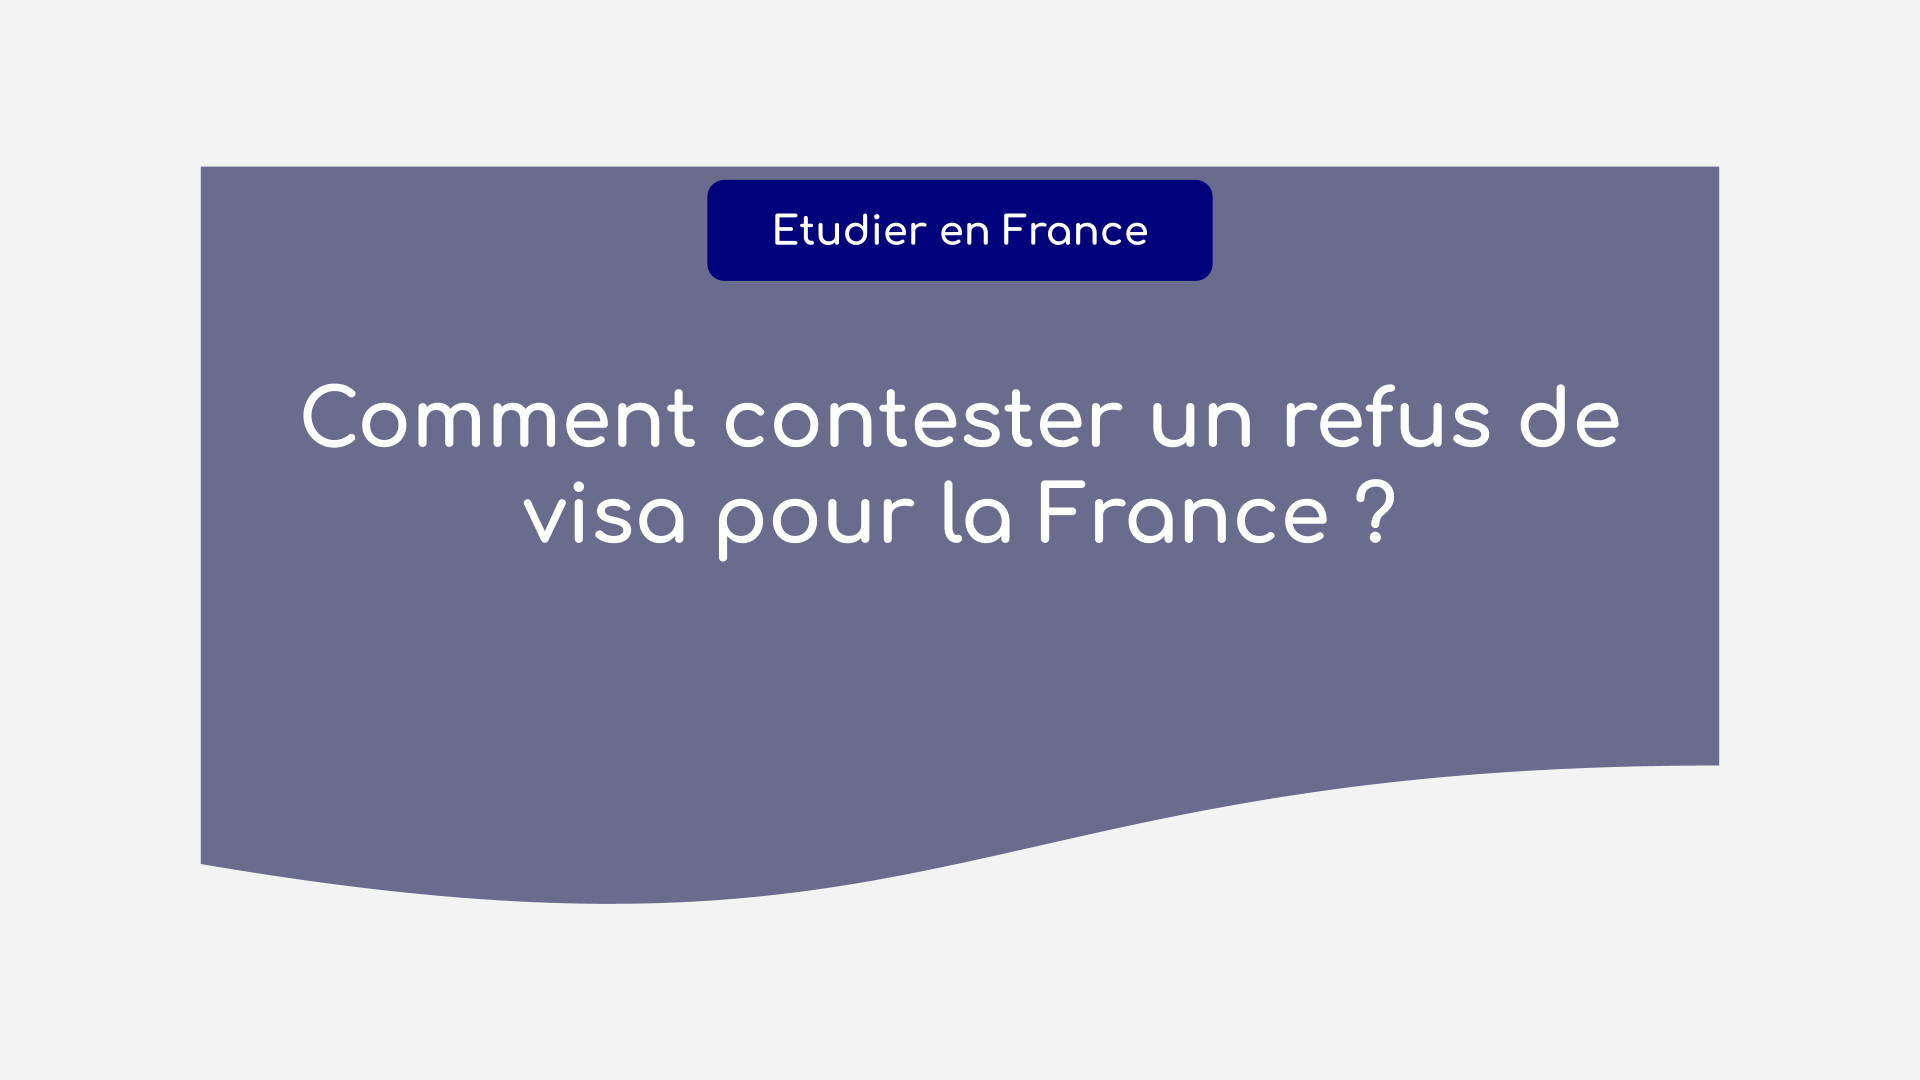 Comment contester un refus de visa pour la France ?